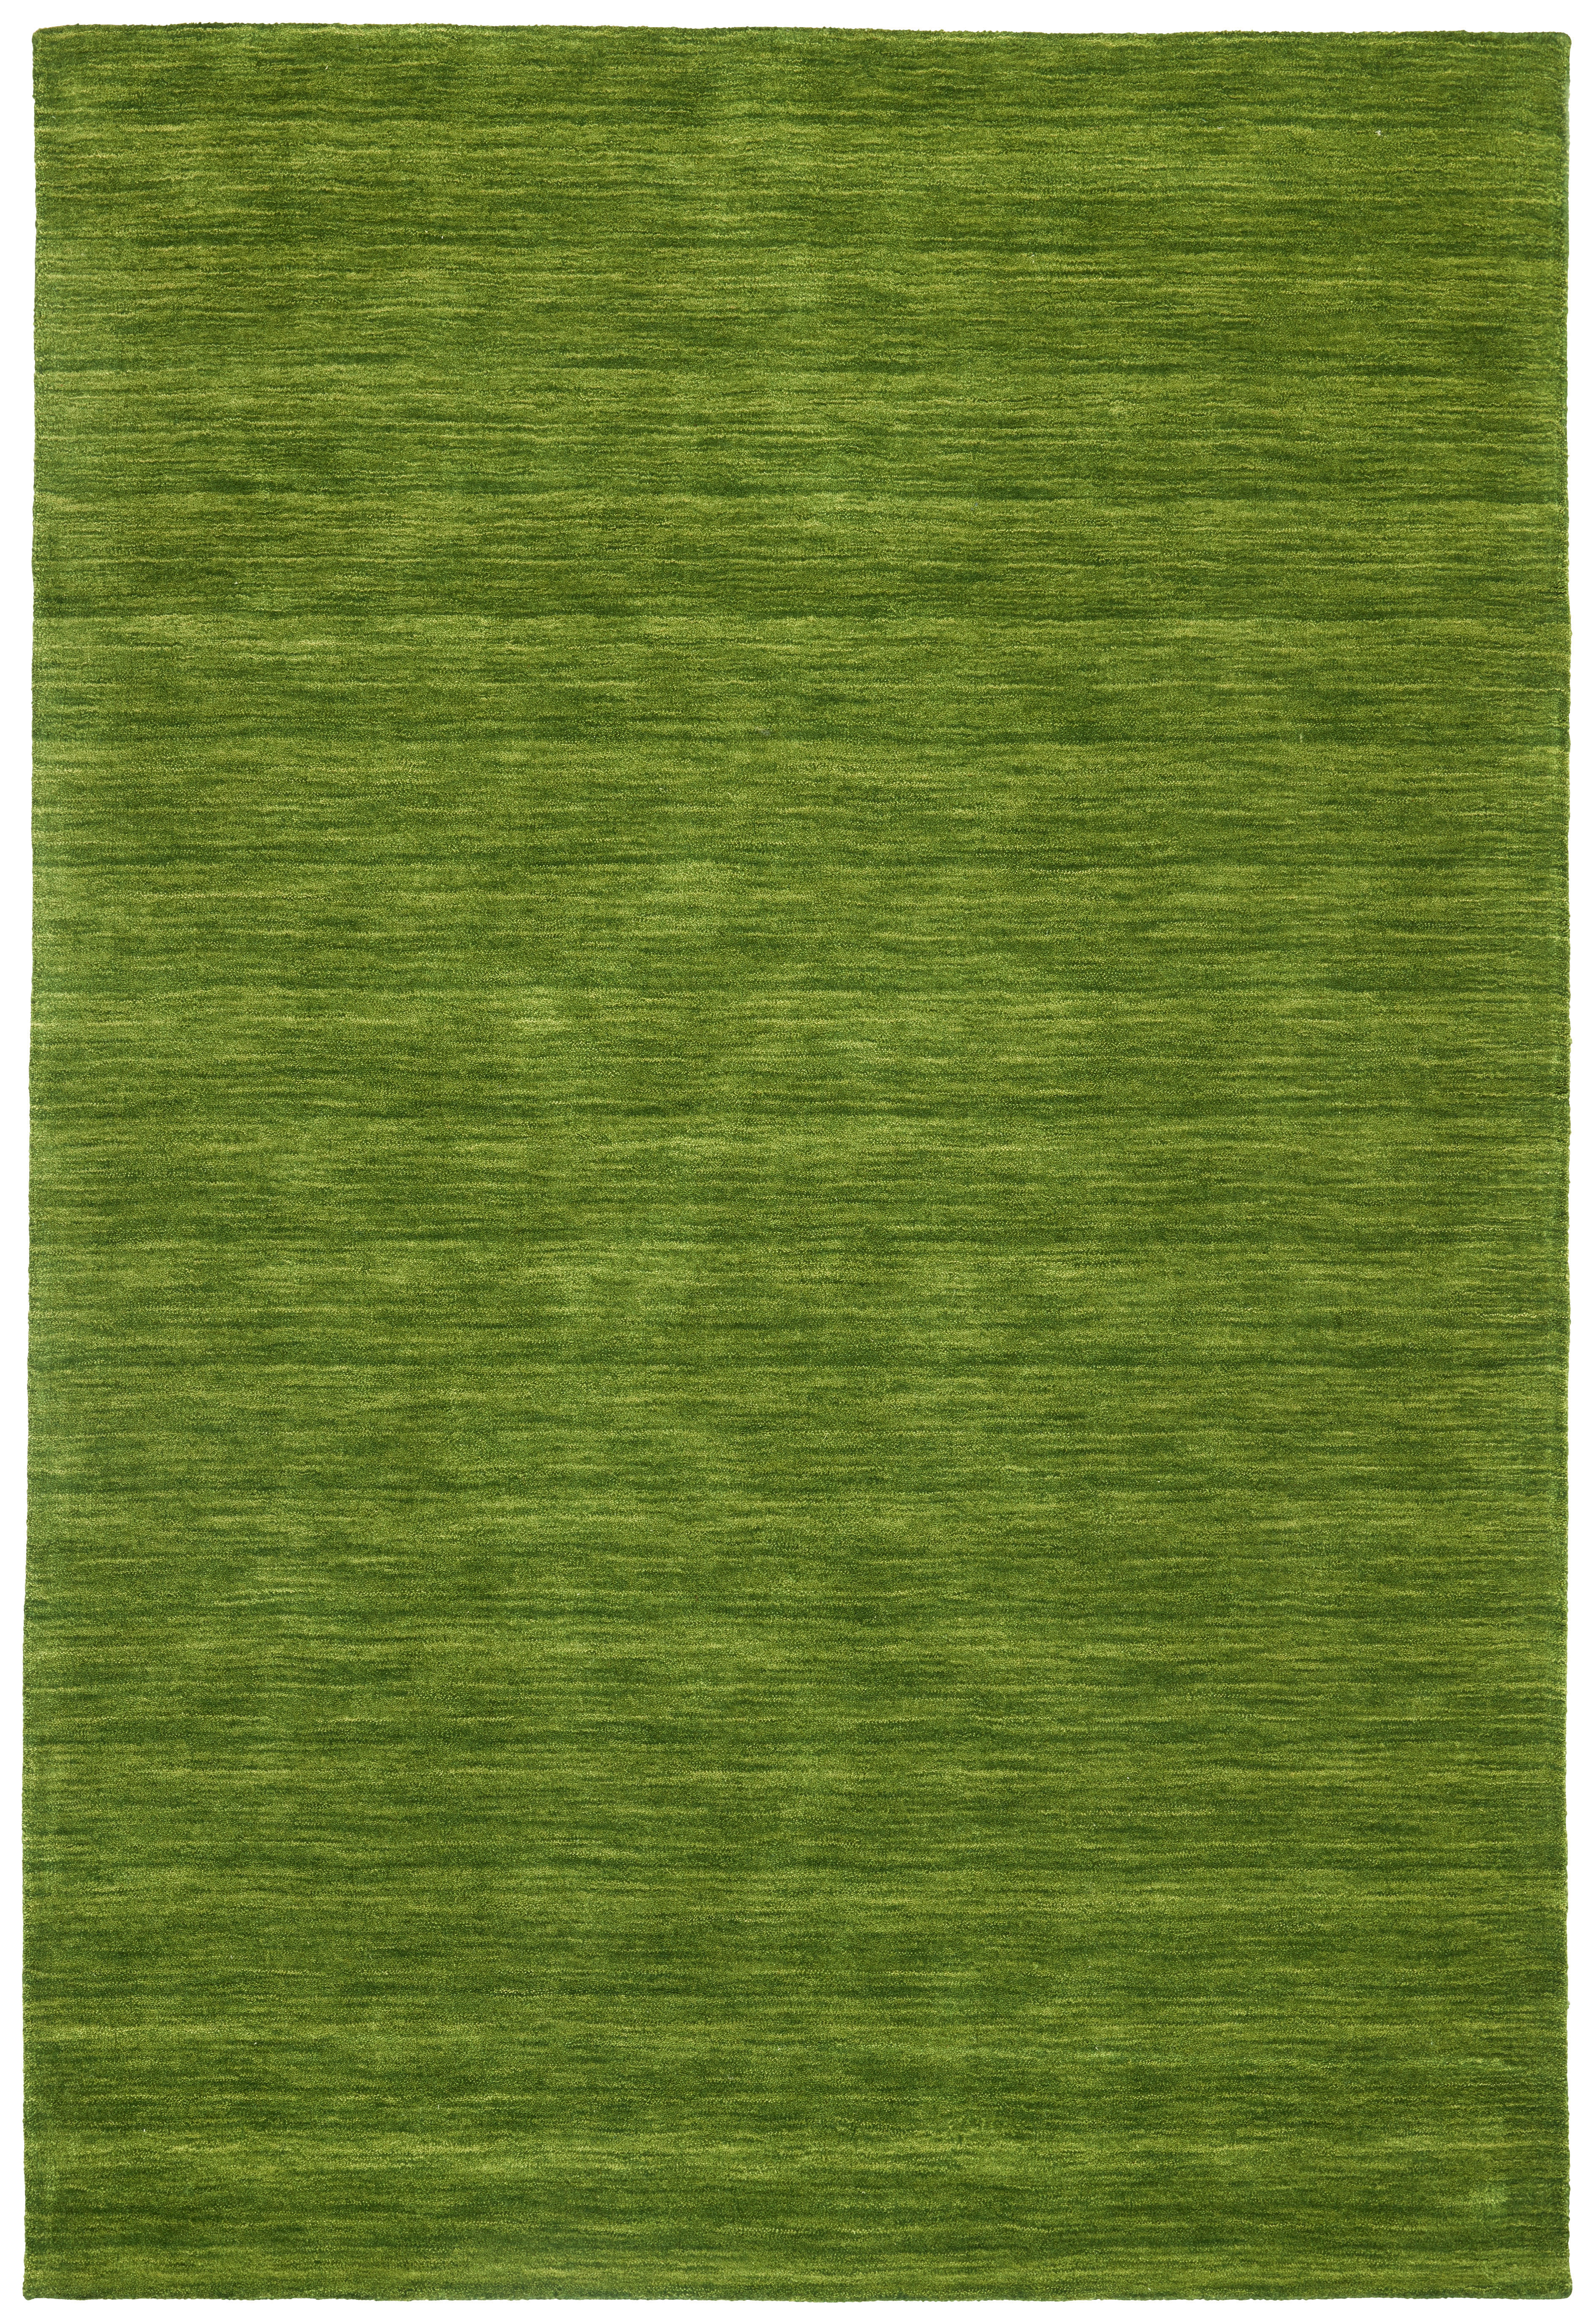 Cazaris ORIENTÁLNÍ KOBEREC, 60/90 cm, zelená - zelená